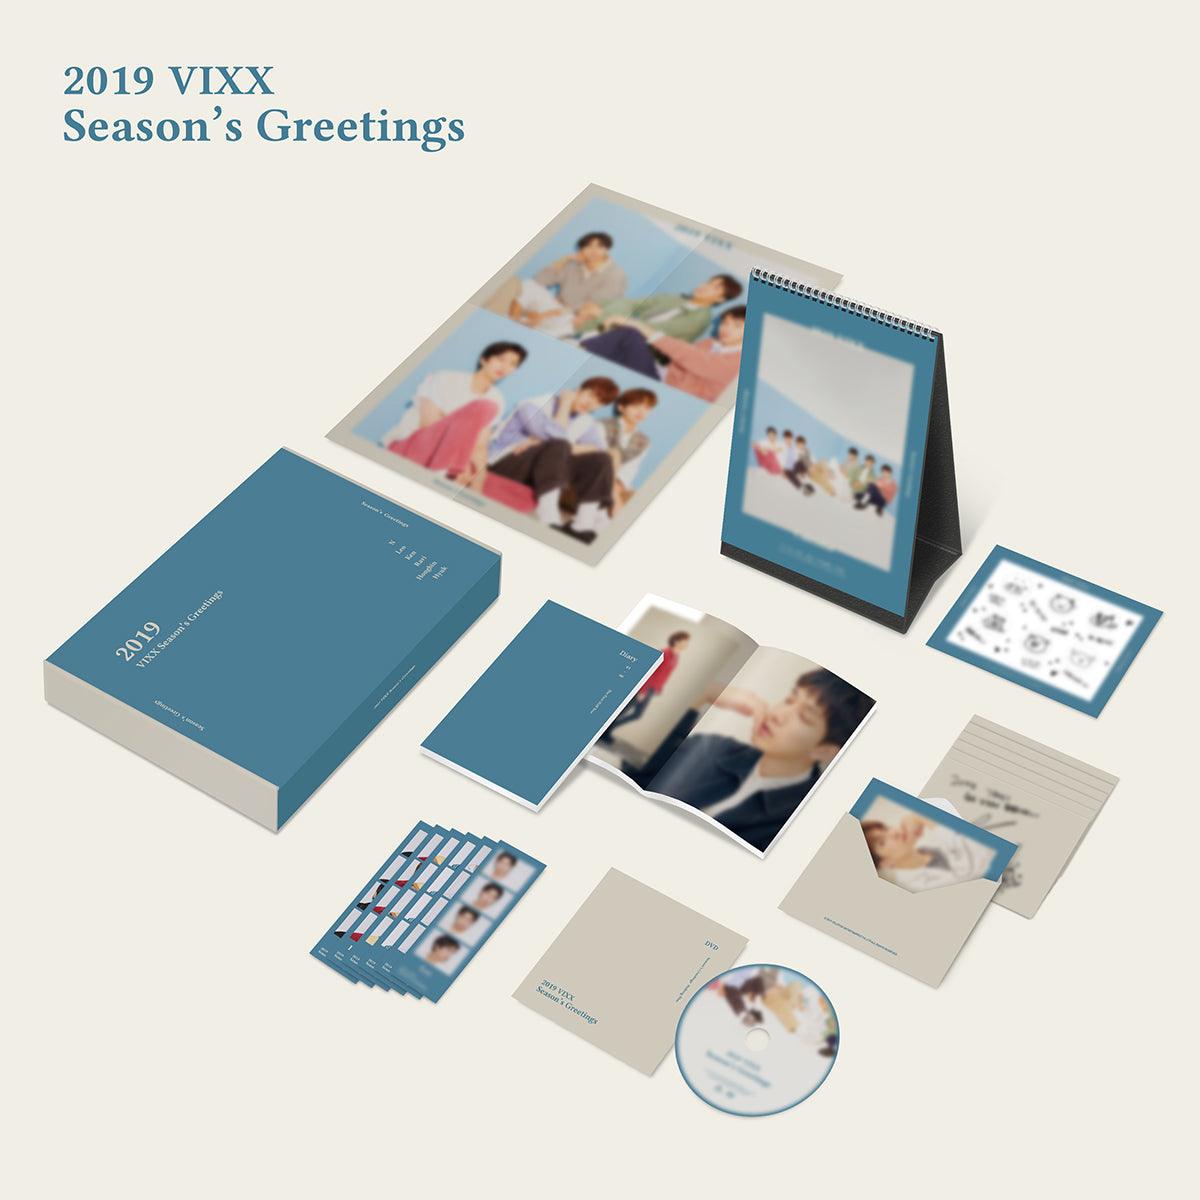 VIXX '2019 SEASON'S GREETINGS' - KPOP REPUBLIC